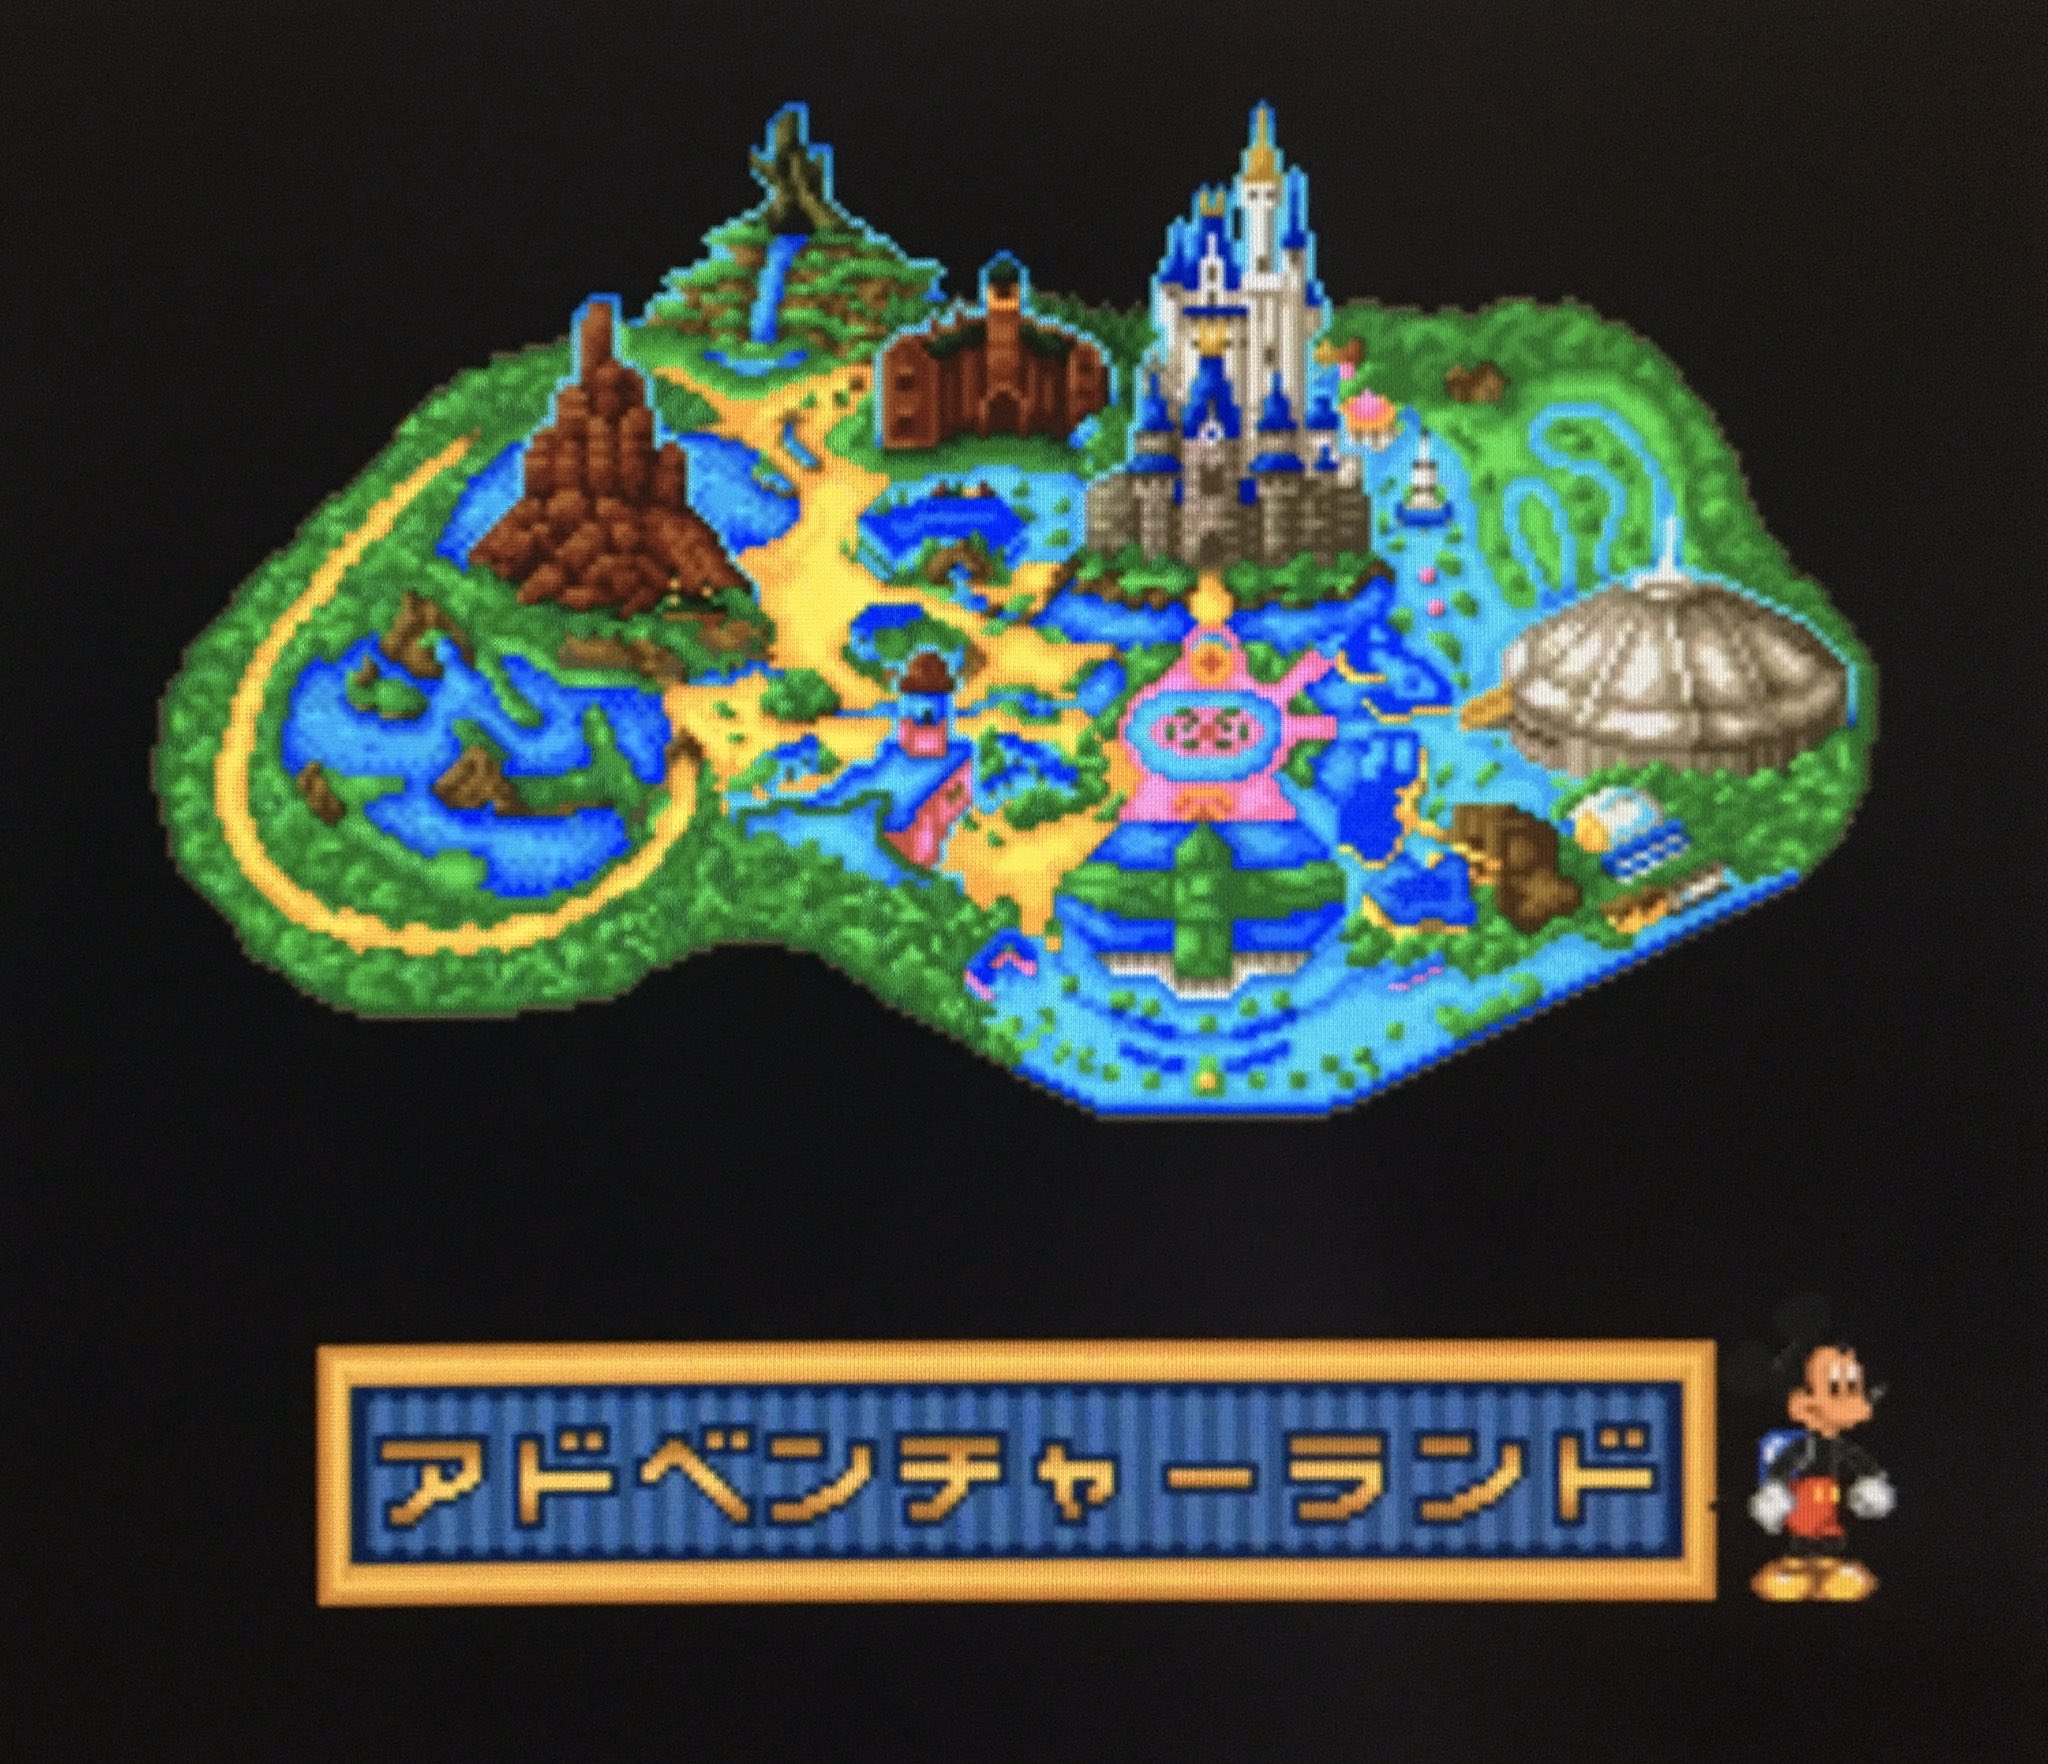 ゲーム探偵団 Sur Twitter 本日はスーパーファミコン ミッキーの東京ディズニーランド大冒険 が発売されて25周年です おめでとうございます T Co Tahwh3gdbo Twitter